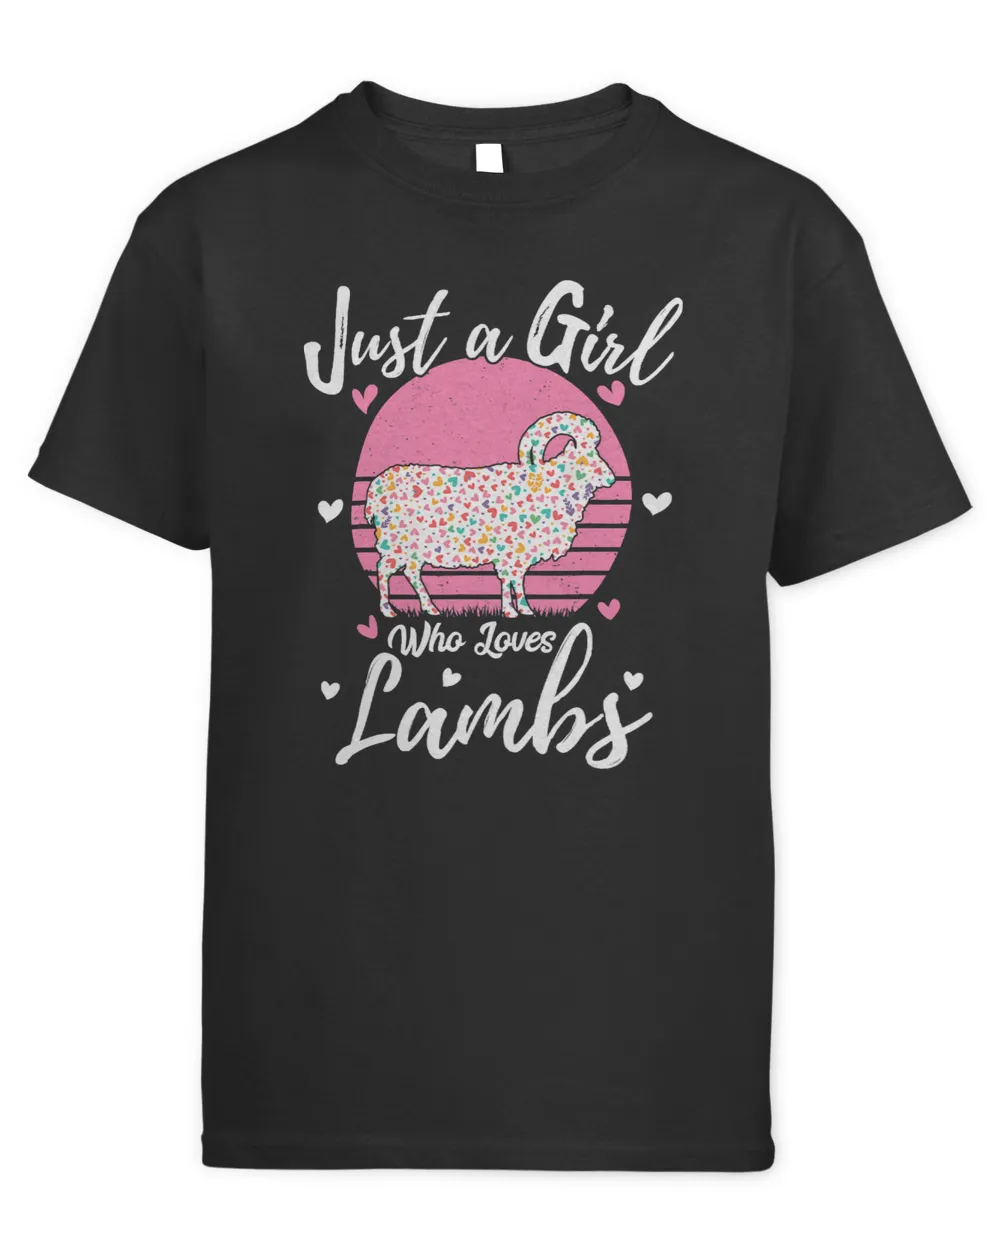 Sheep Lamb Lamb Sheep Animal Lover Tee Just A Girl Who Loves Lambs 42 Ewe Sheeps